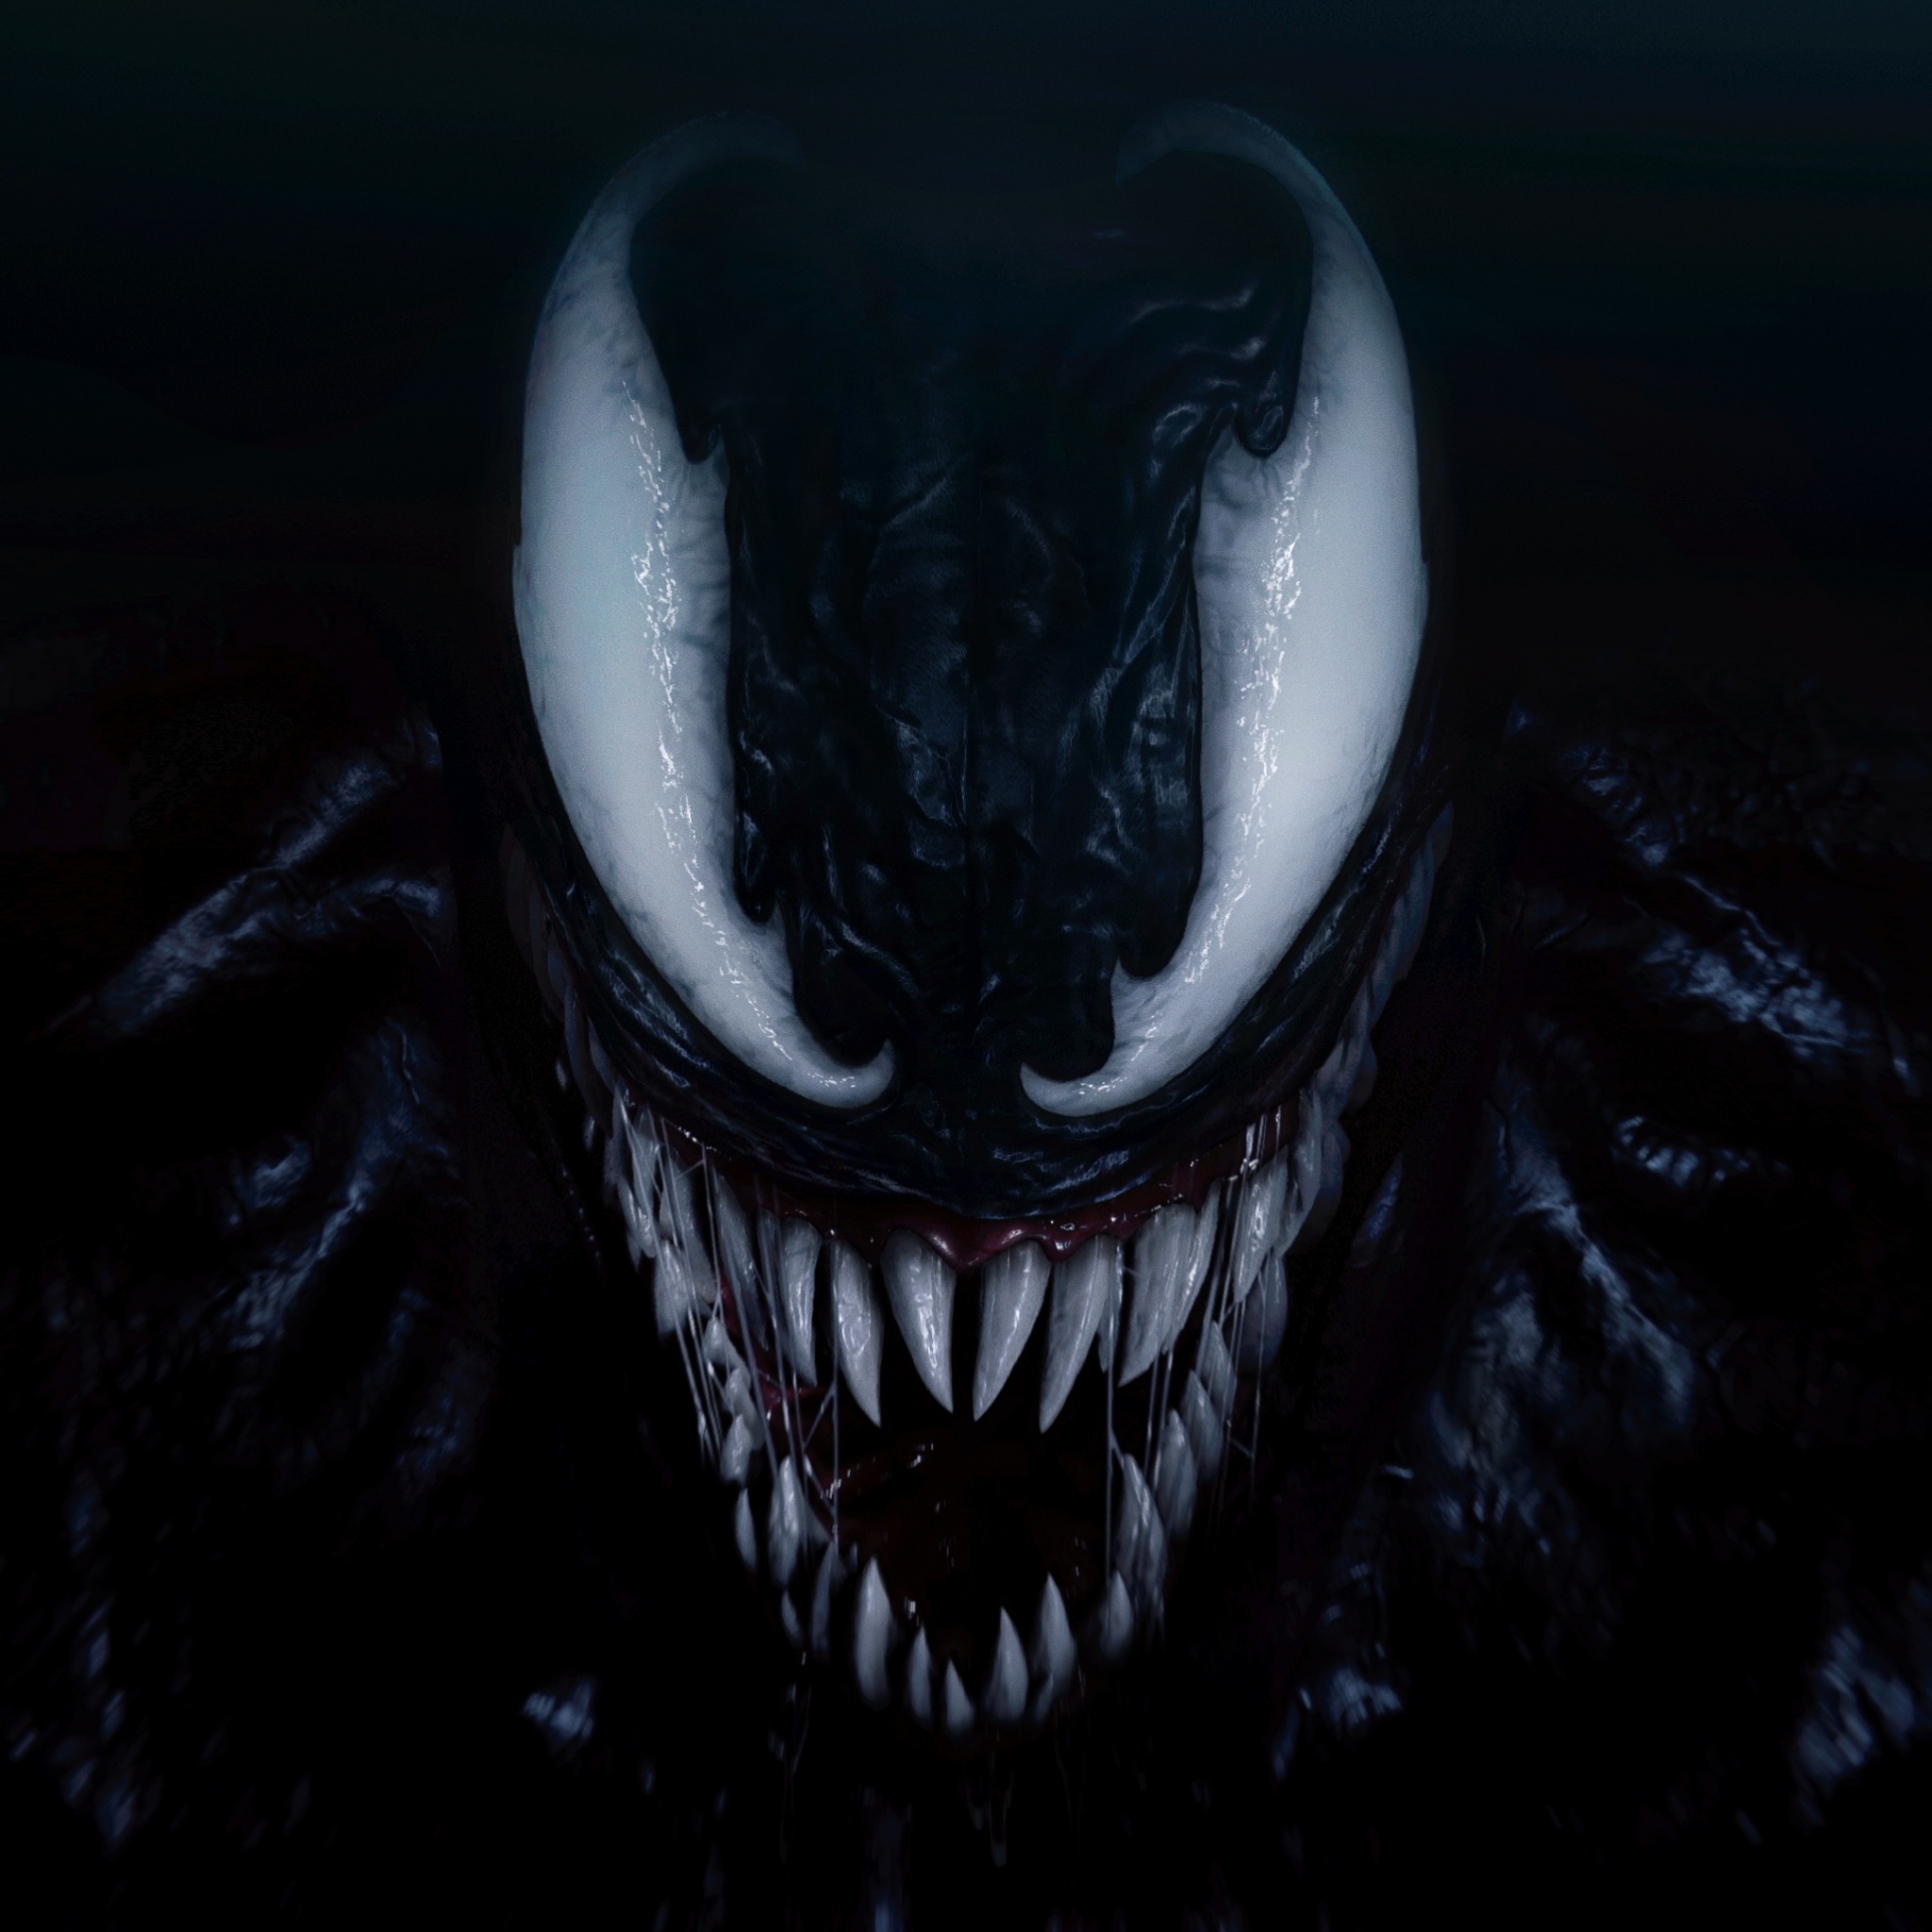 Hình nền Venom 4K: Thưởng thức vẻ đẹp ma mị của Venom với hình nền 4K chất lượng cao. Được tải về miễn phí và dễ dàng cài đặt, bạn có thể trang trí cho màn hình của mình với những hình ảnh đẹp và nghệ thuật đầy ấn tượng. Hãy sẵn sàng cho một trải nghiệm hoàn toàn mới với Venom!